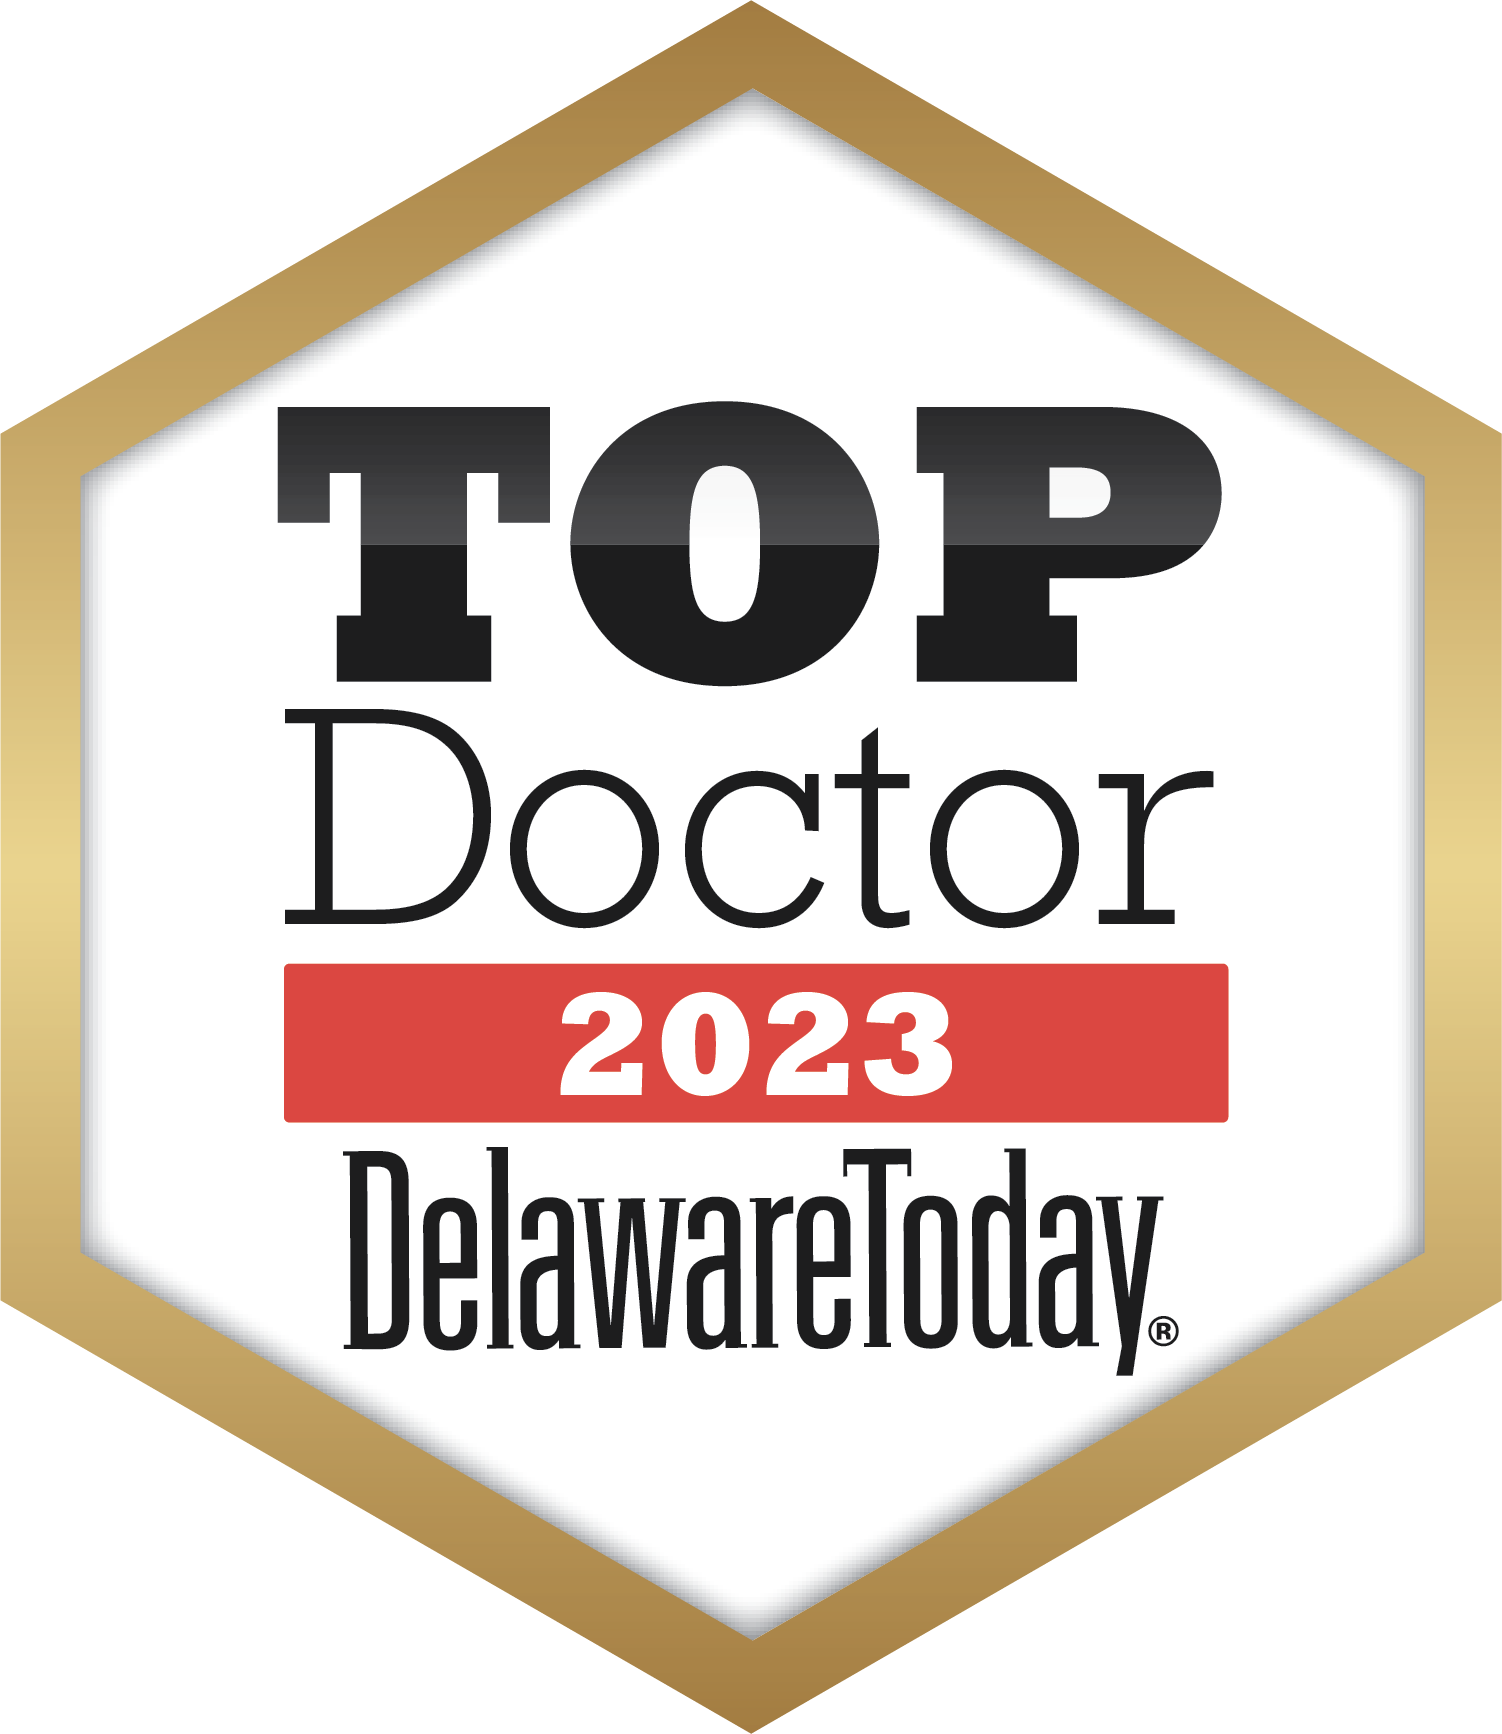 top doctor delaware today 2023 badge